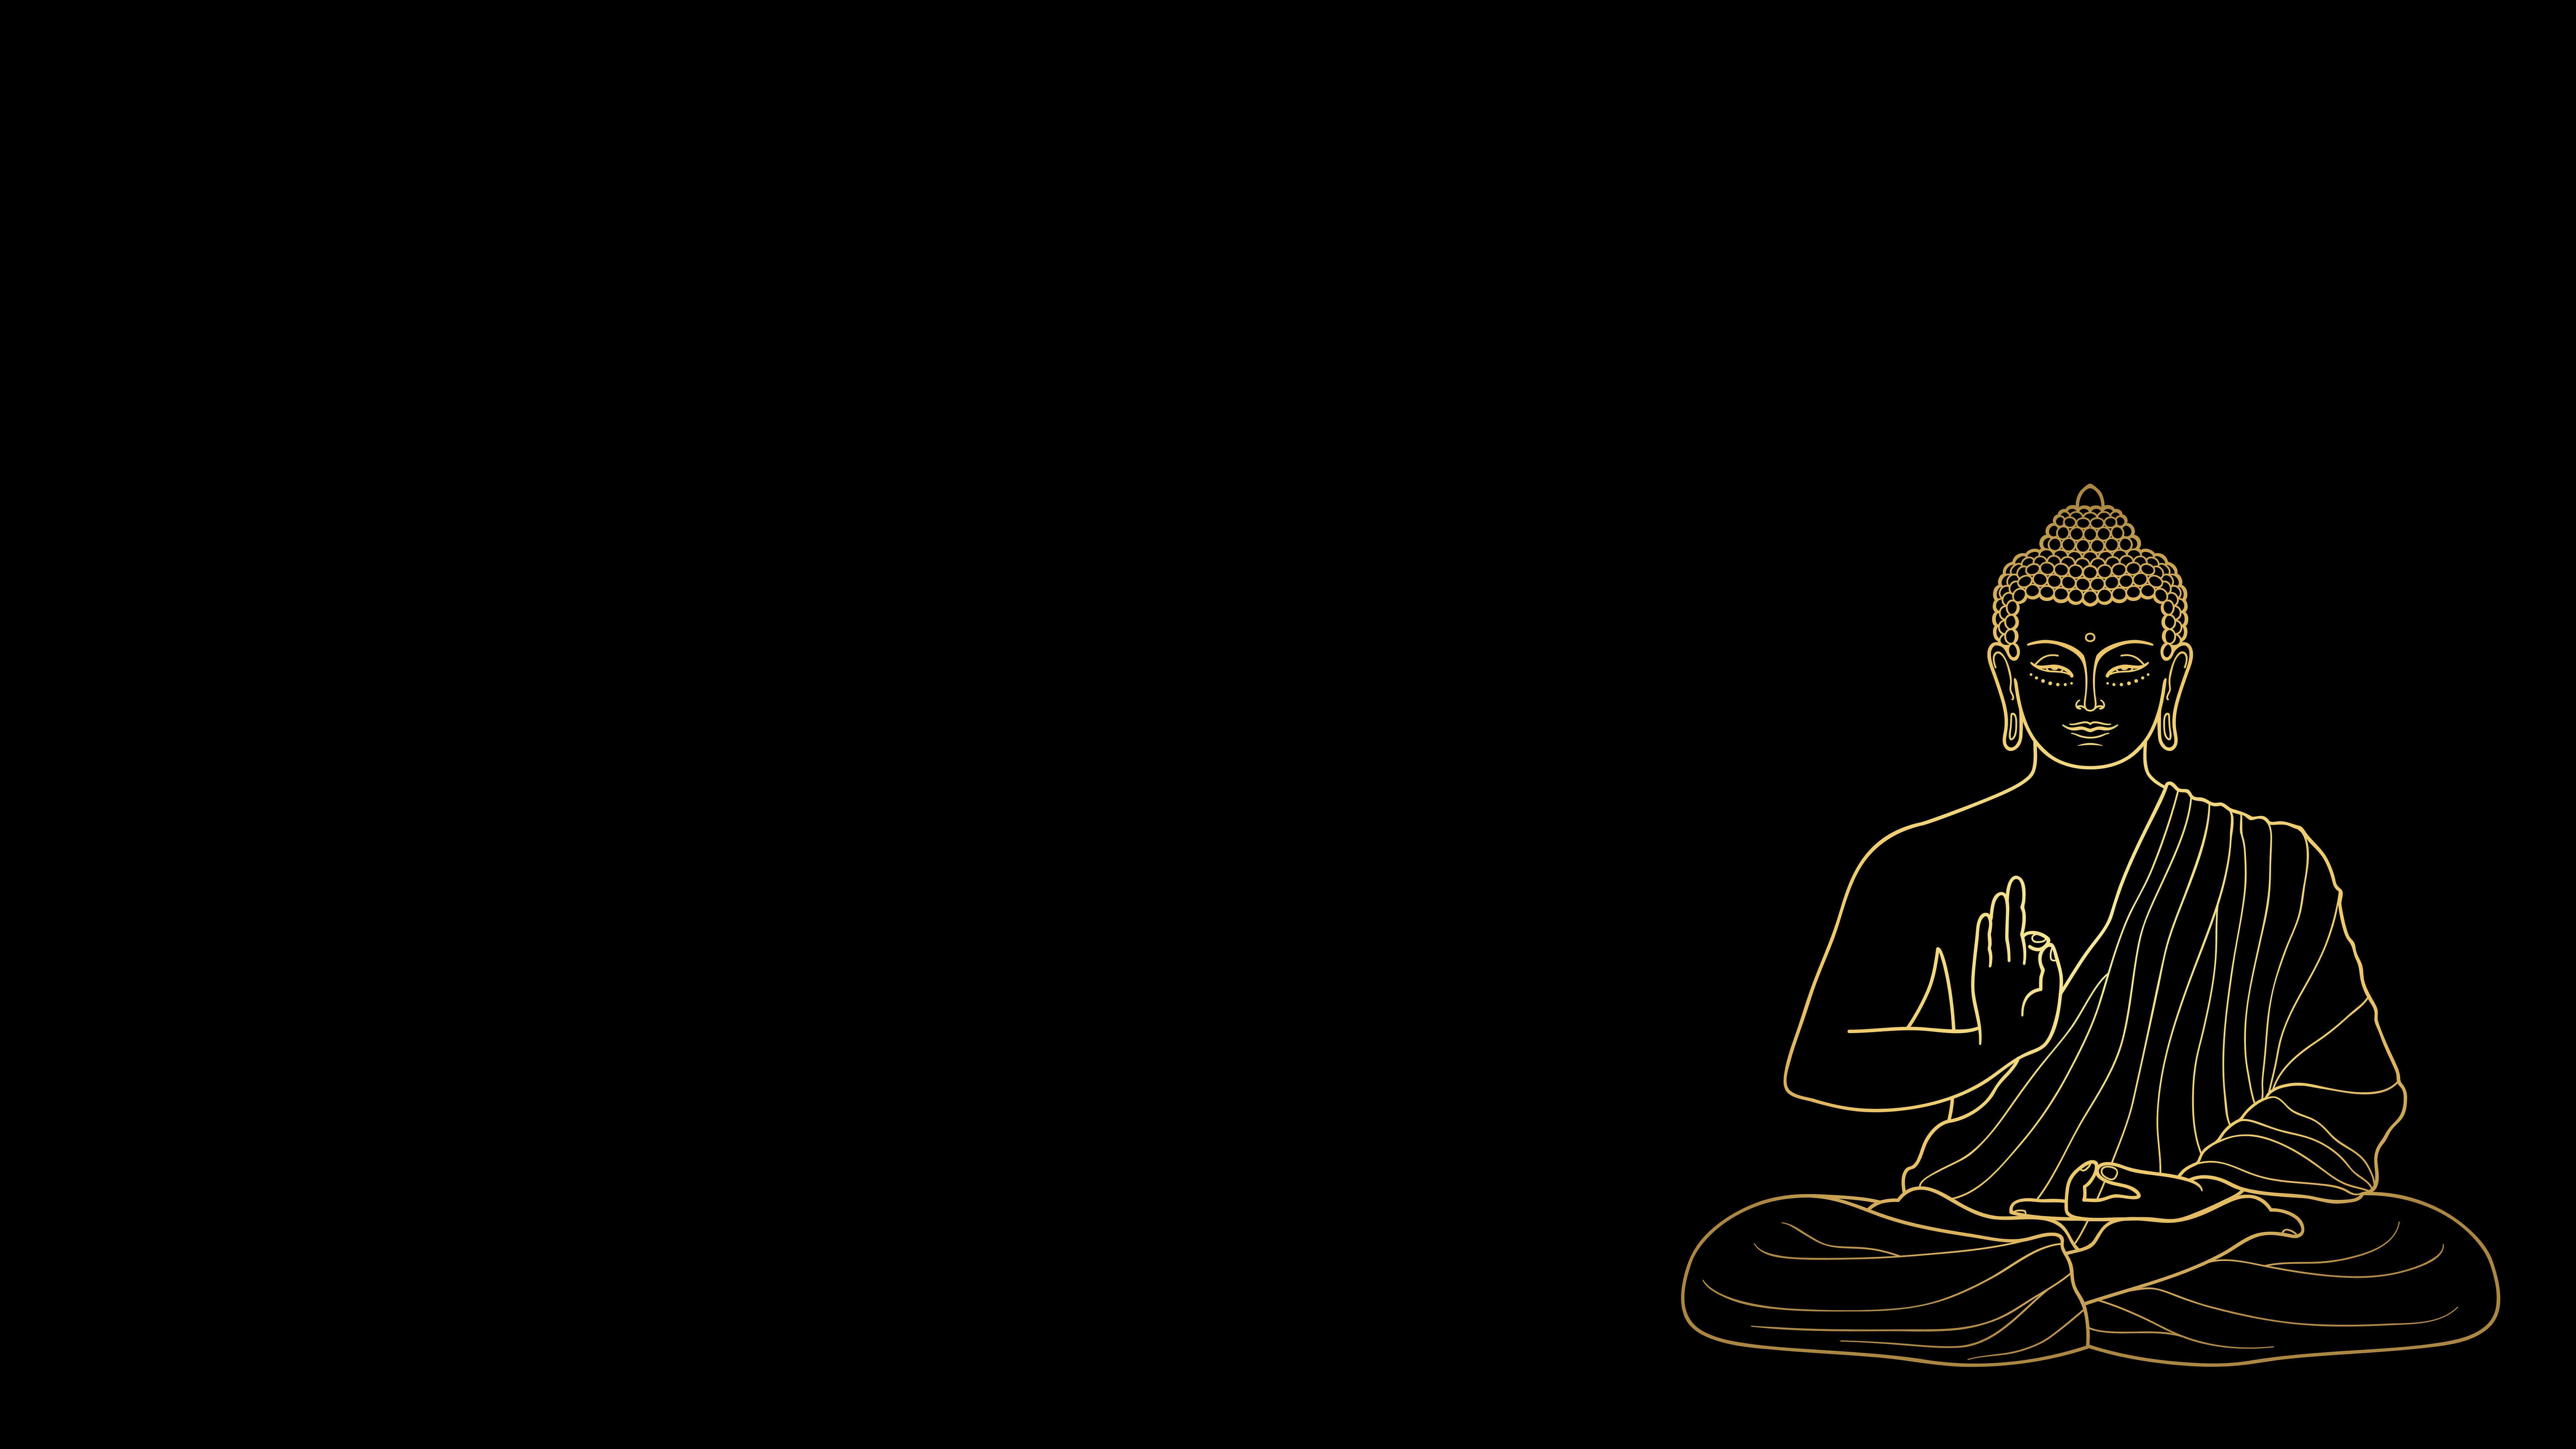 Buddhist Meditation Wallpapers - Top Những Hình Ảnh Đẹp